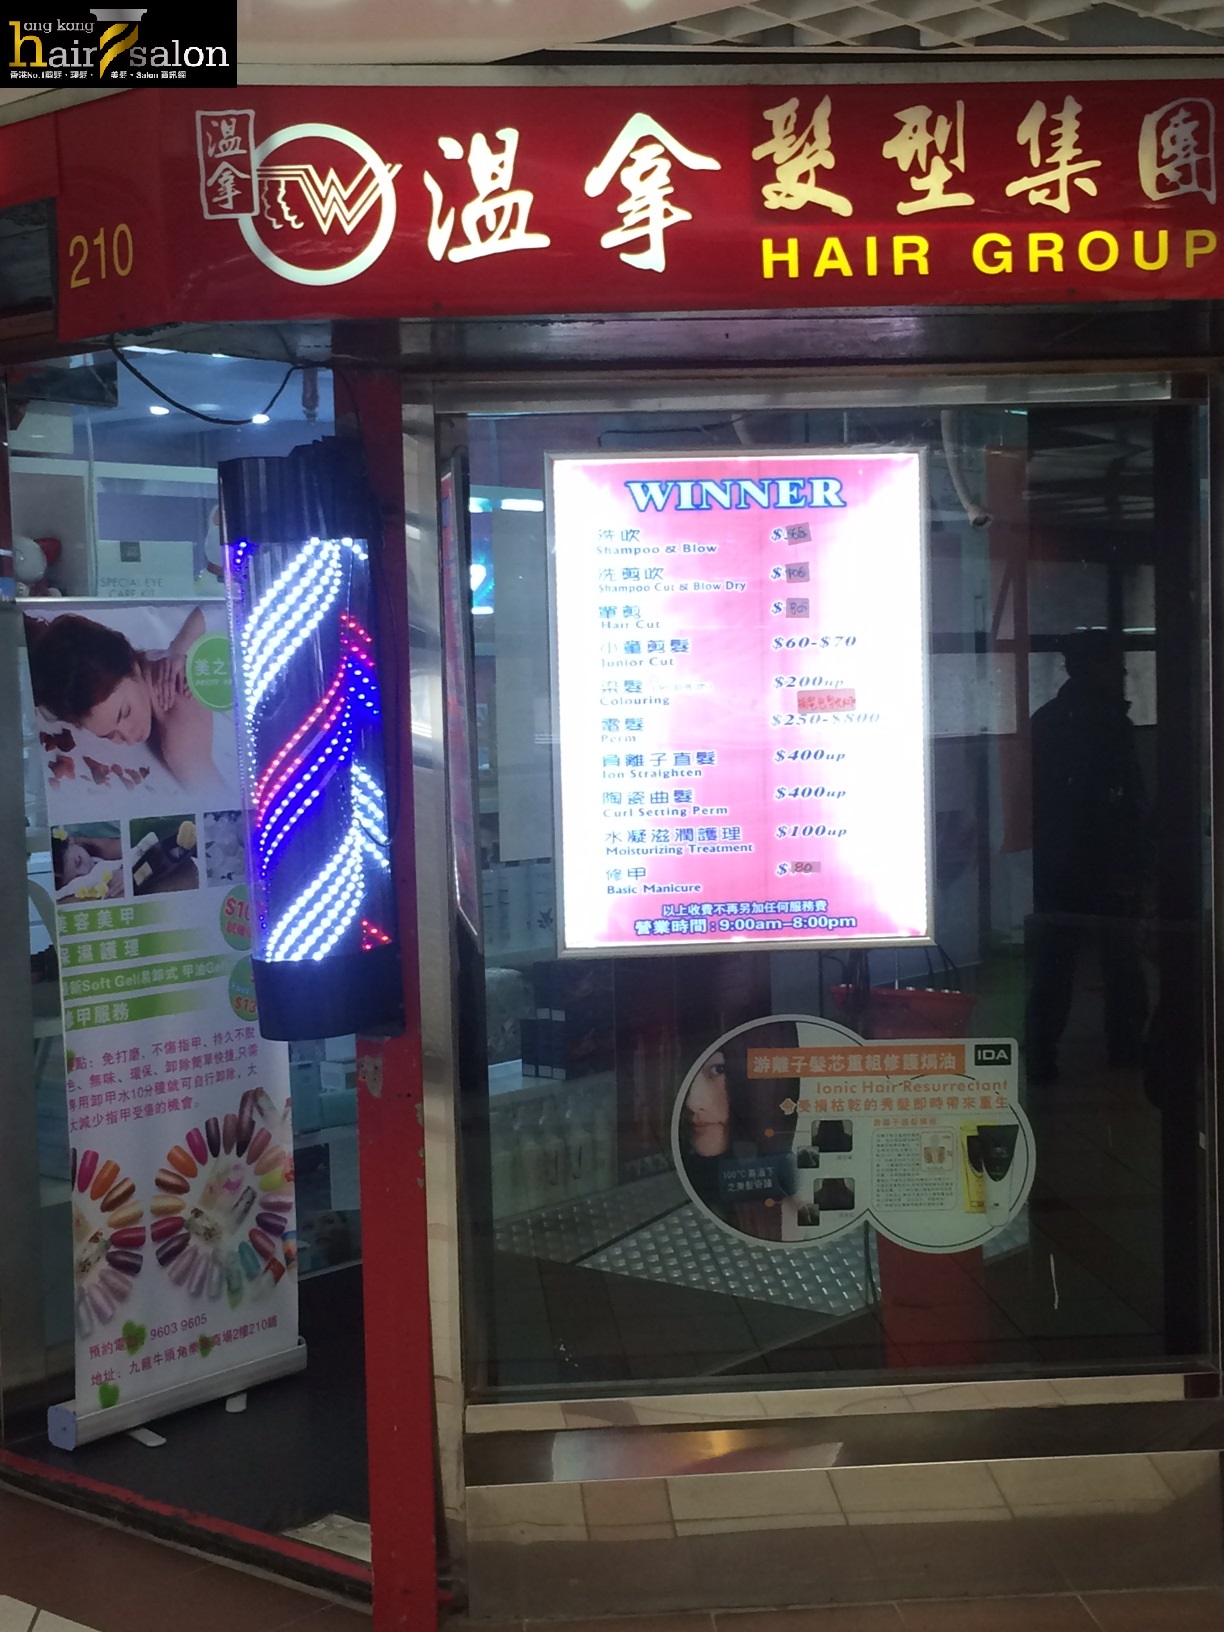 Haircut: 溫拿髮型集團 Hair Group